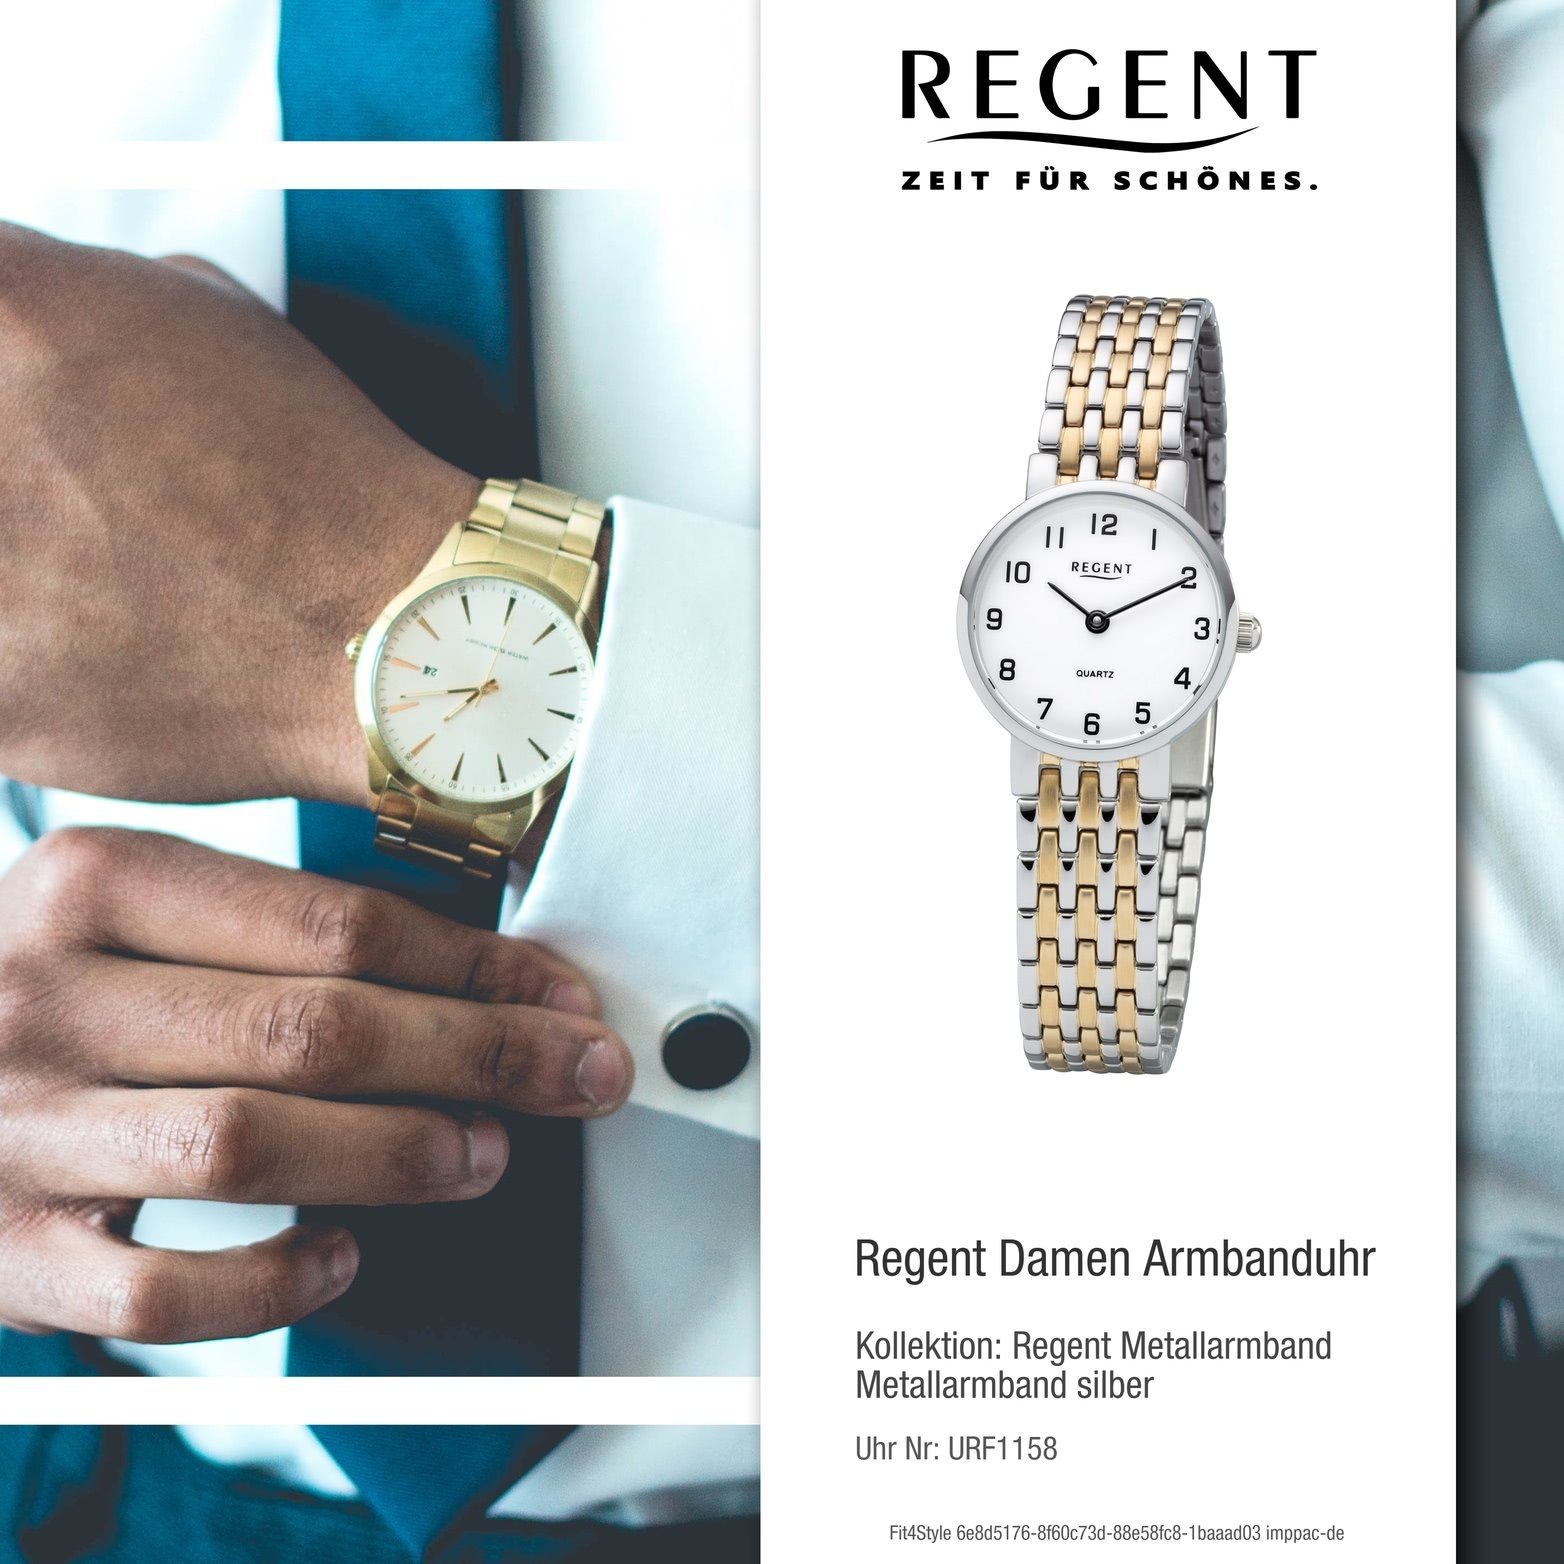 Regent Quarzuhr silber, Damenuhr F-1158 gold, (ca. 24mm) Damenuhr Armbanduhr, klein rundes Regent Gehäuse, Metall Metallarmband